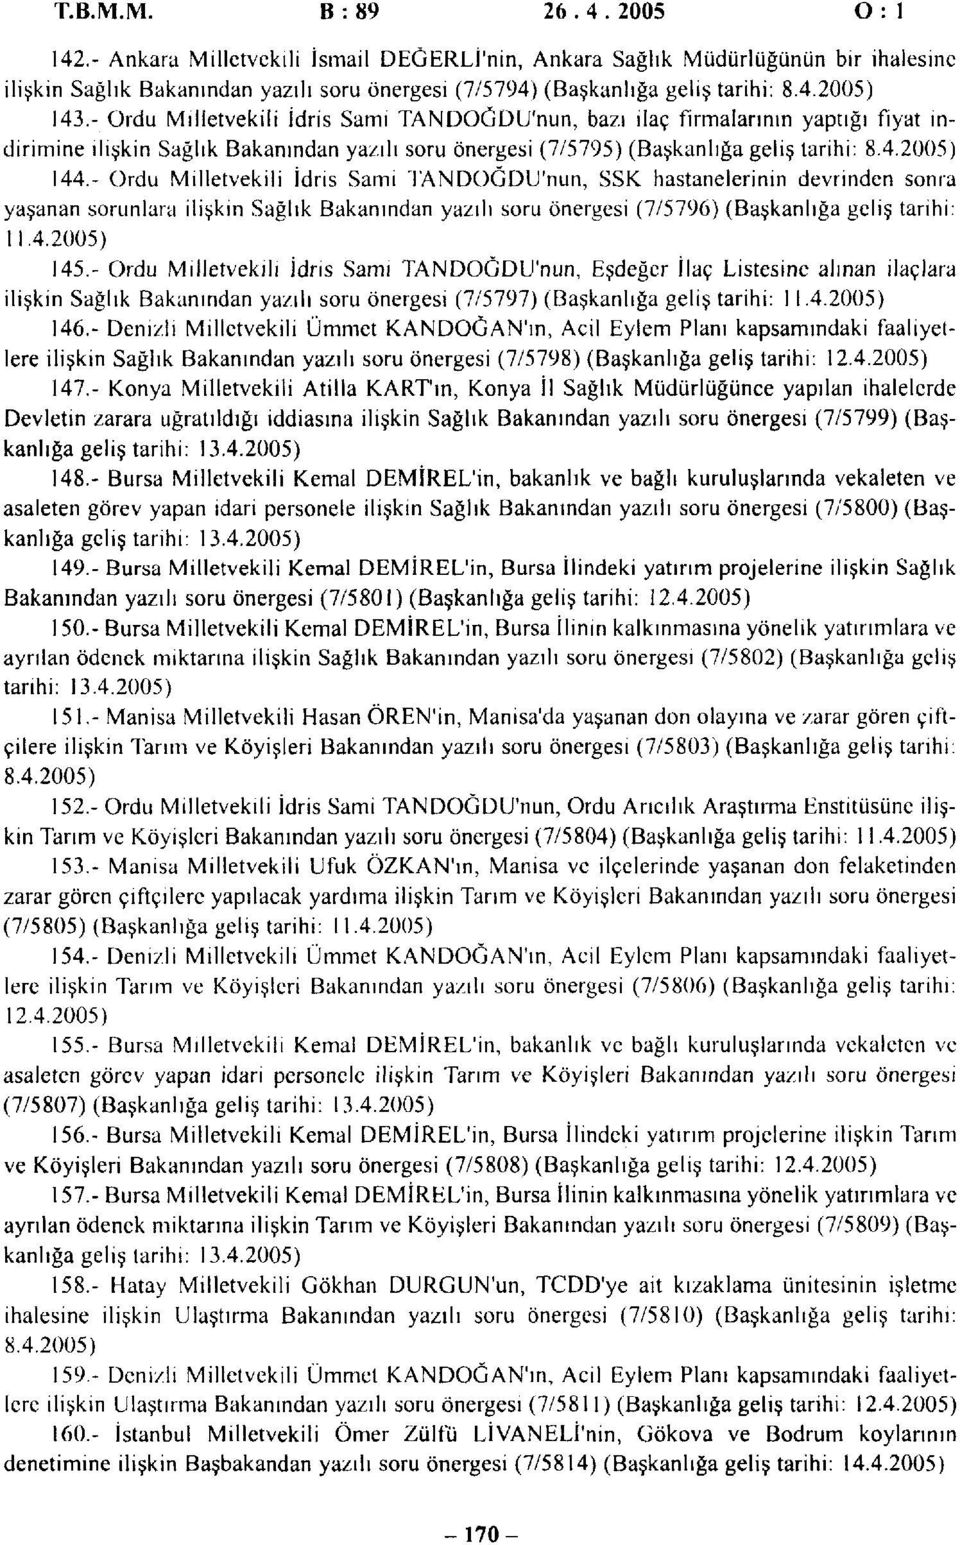 - Ordu Milletvekili İdris Sami TANDOGDU'nun, bazı ilaç firmalarının yaptığı fiyat indirimine ilişkin Sağlık Bakanından yazılı soru önergesi (7/5795) (Başkanlığa geliş tarihi: 8.4.2005) 144.